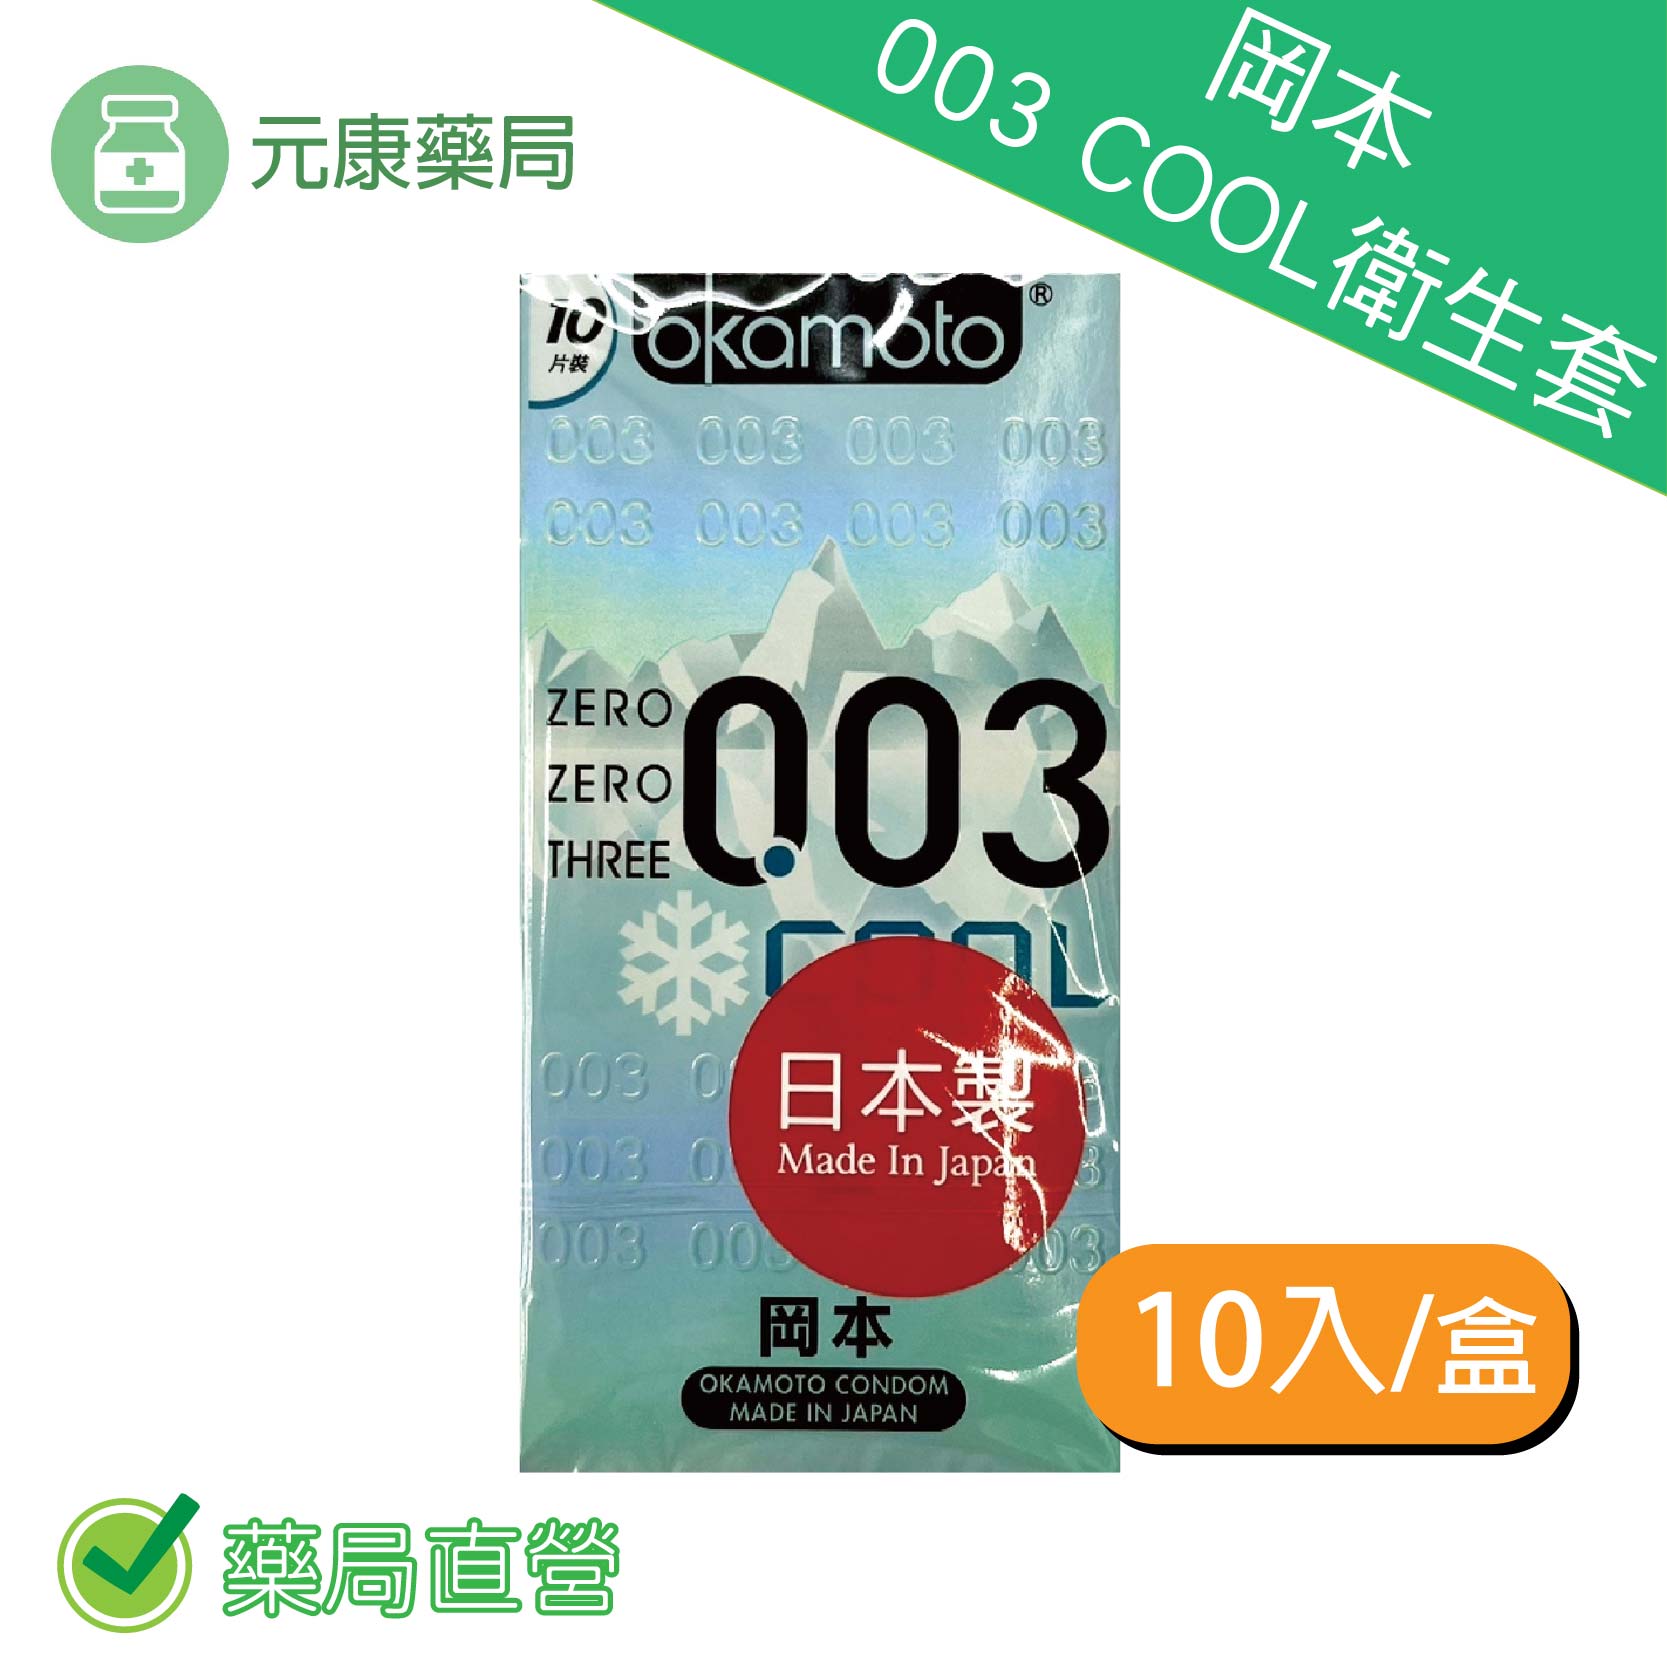 岡本OK-003 COOL衛生套(10入)保險套